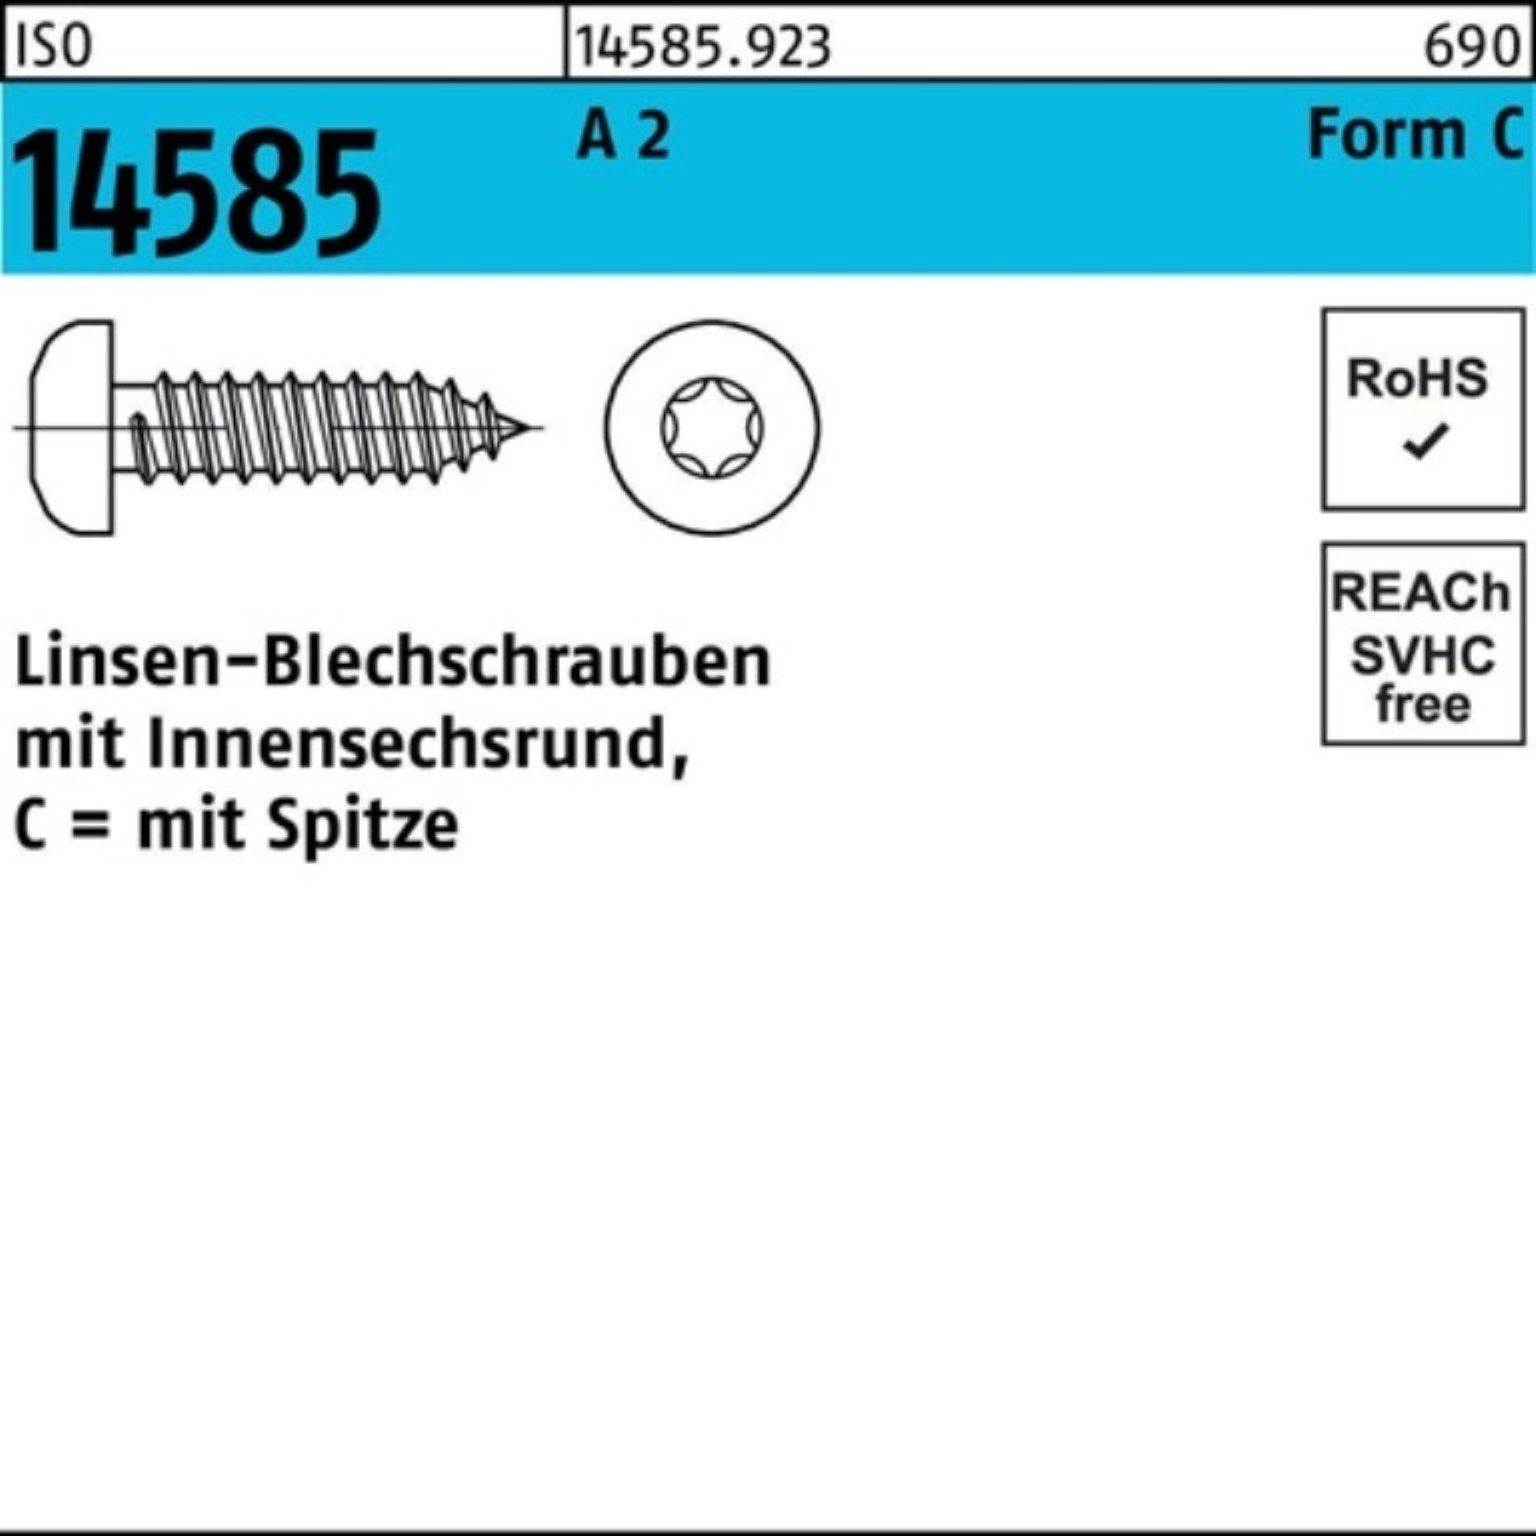 1000er Reyher Blechschraube 2,9x 14585 -C T10 ISR 19 1000 Pack ISO Linsenblechschraube 2 A